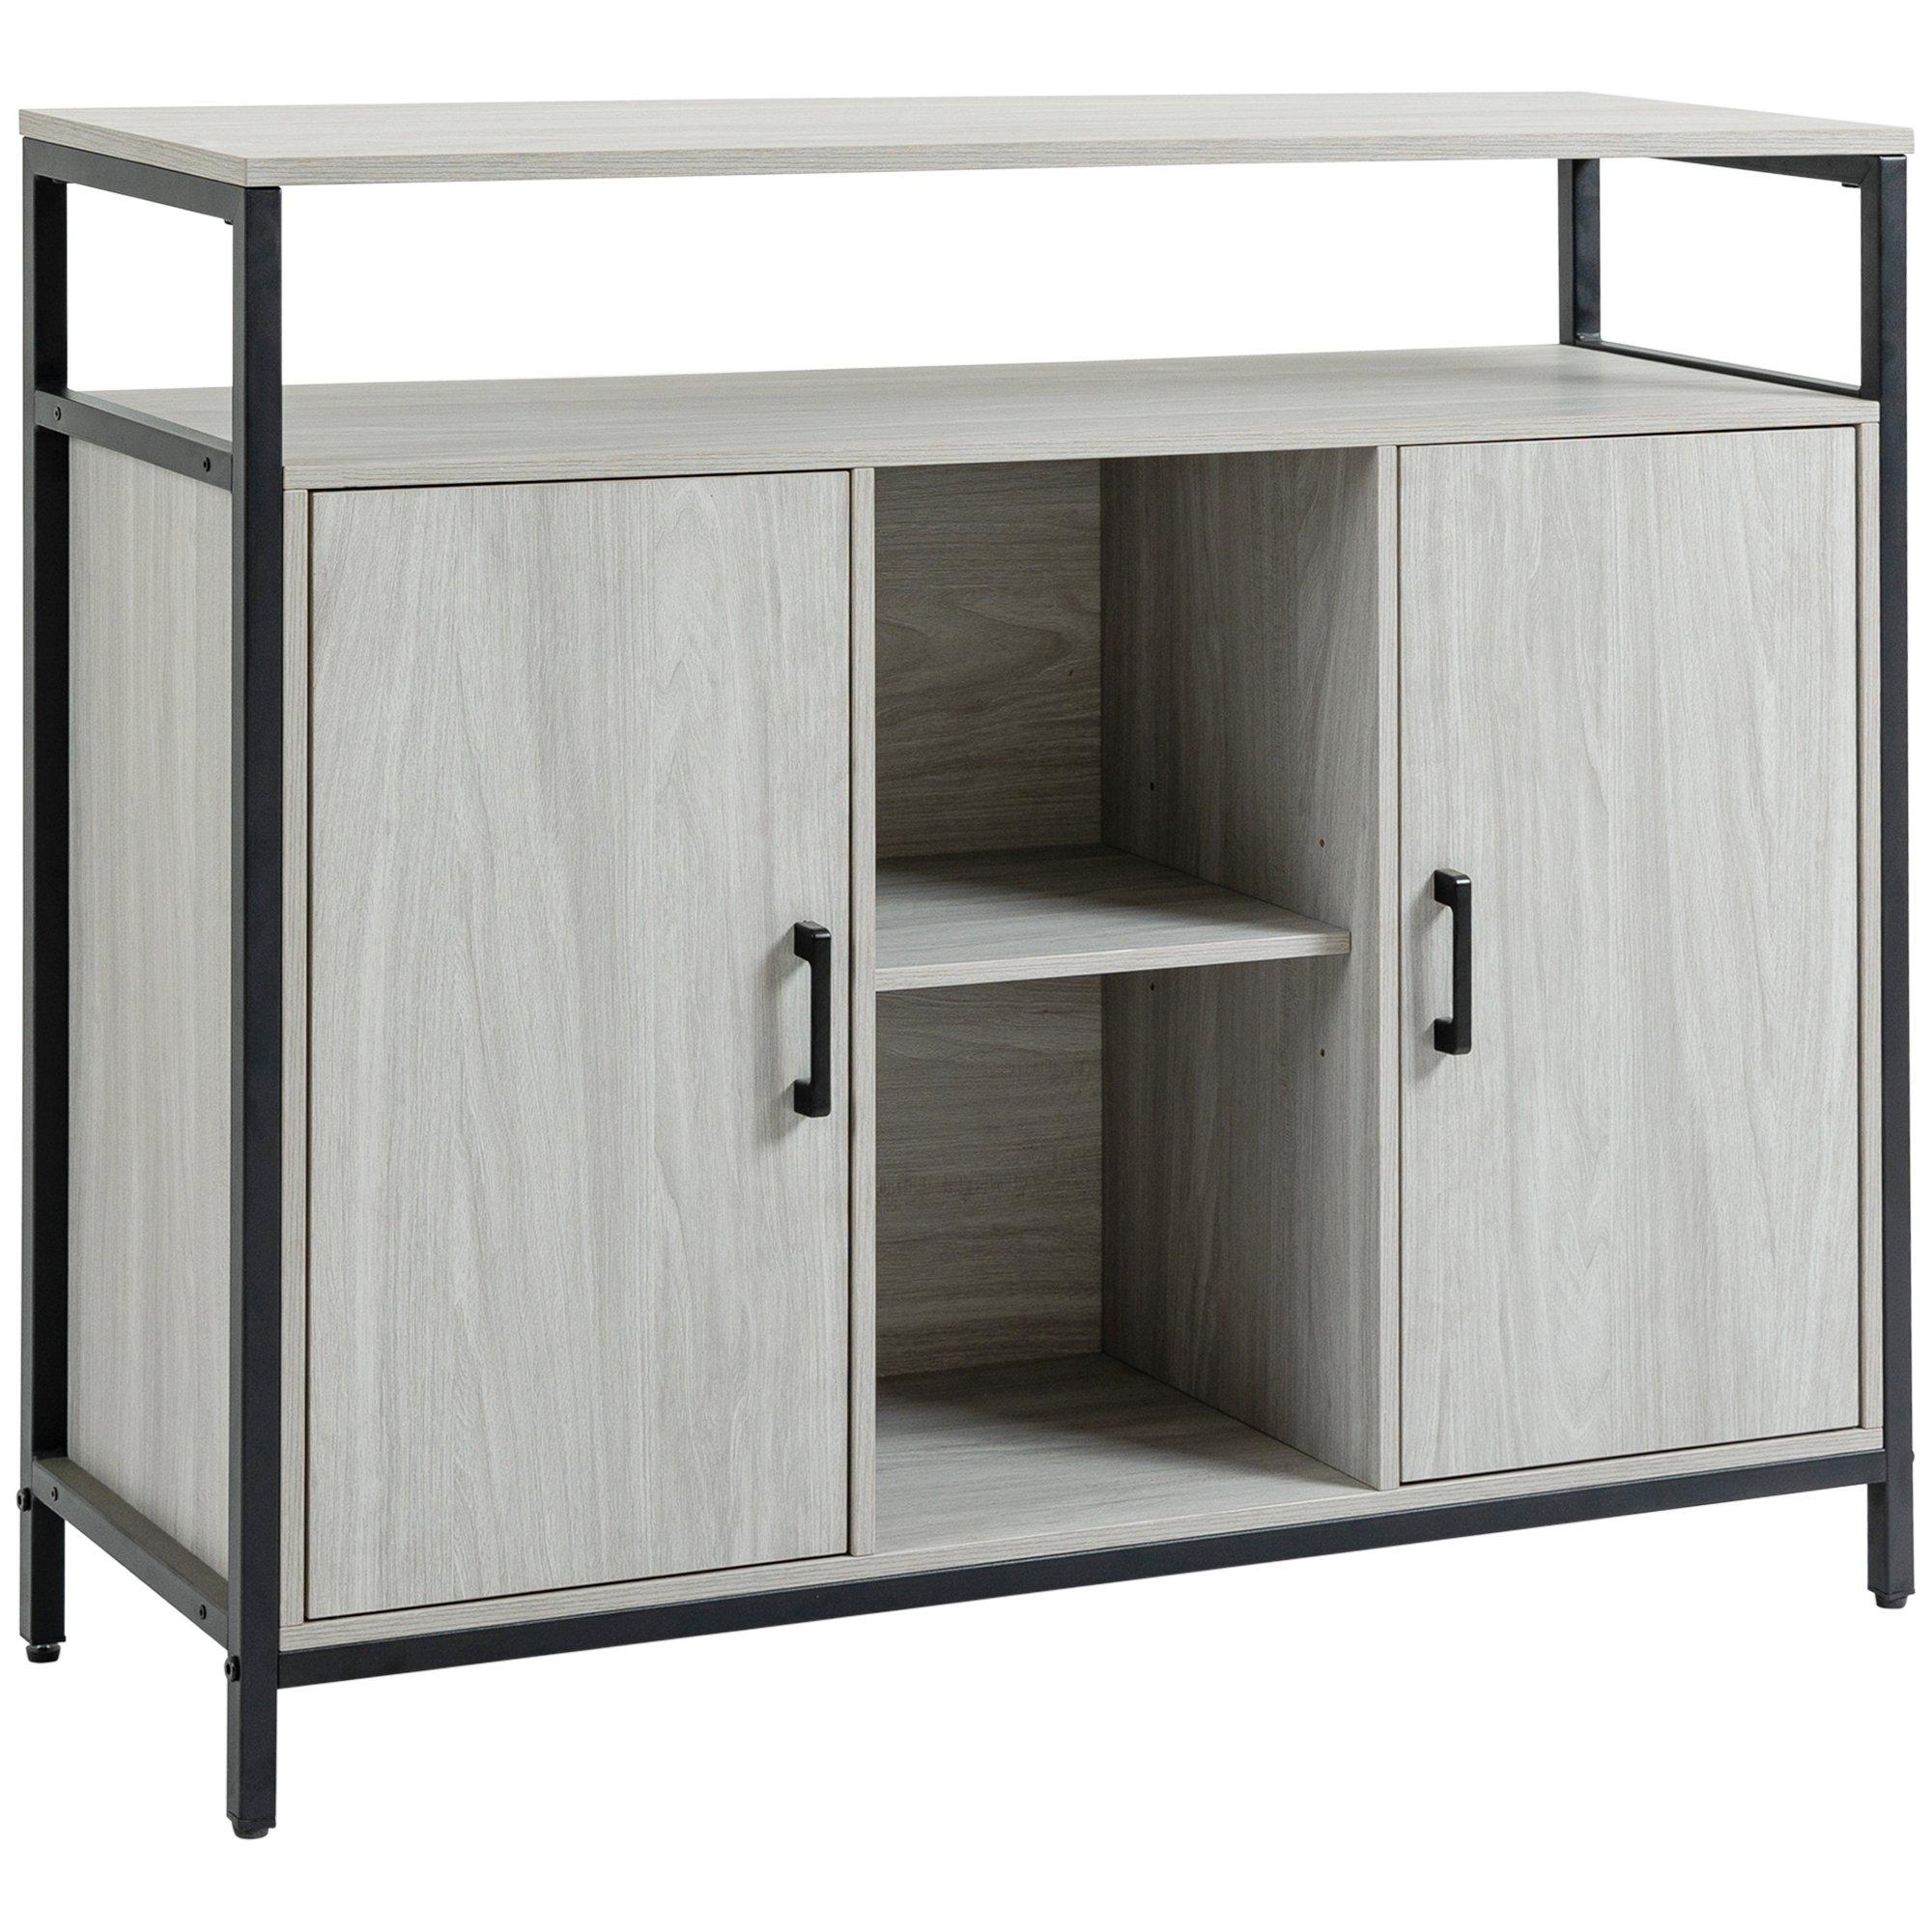 Modern Sideboard Storage Cabinet with Adjustable Shelves Steel Frame